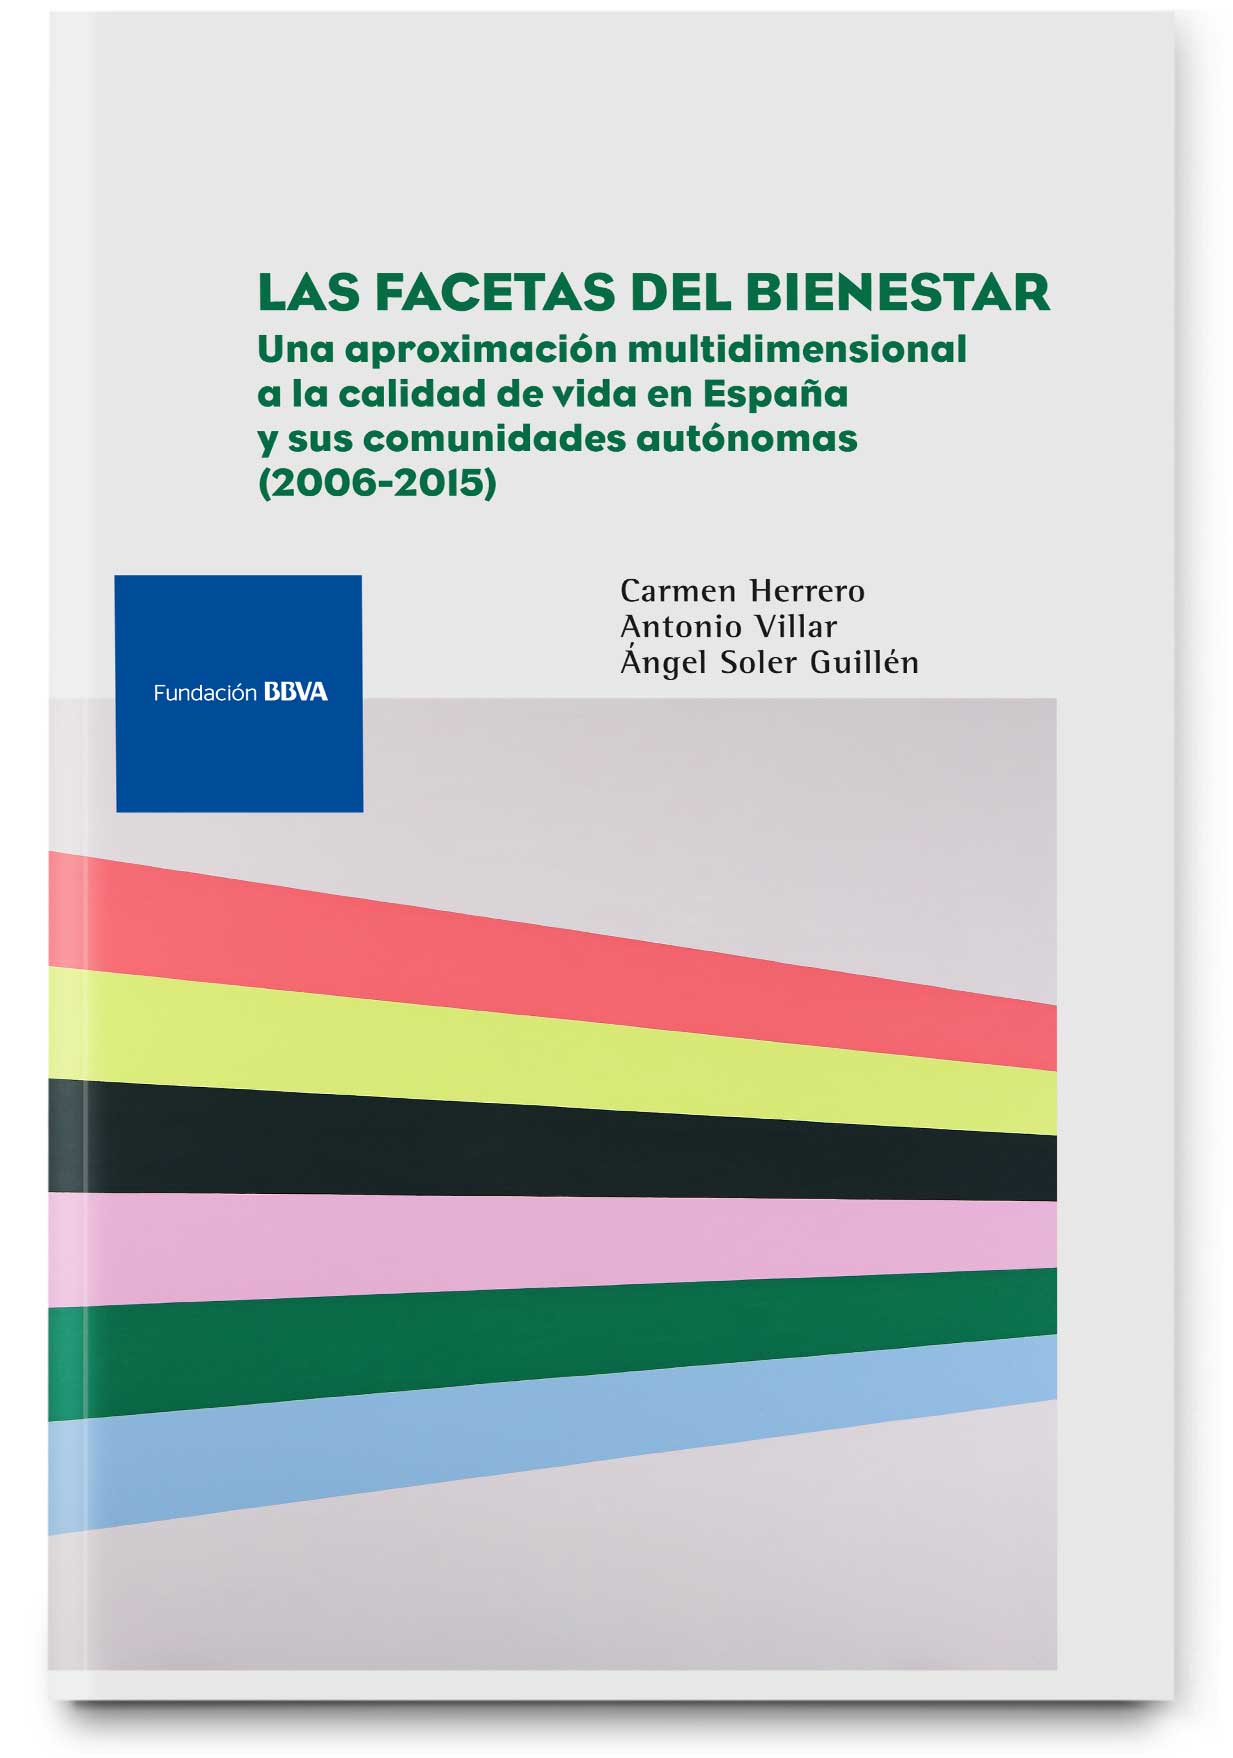 Las facetas del bienestar: una aproximación multidimensional a la calidad de vida en España y sus comunidades autónomas. 2015